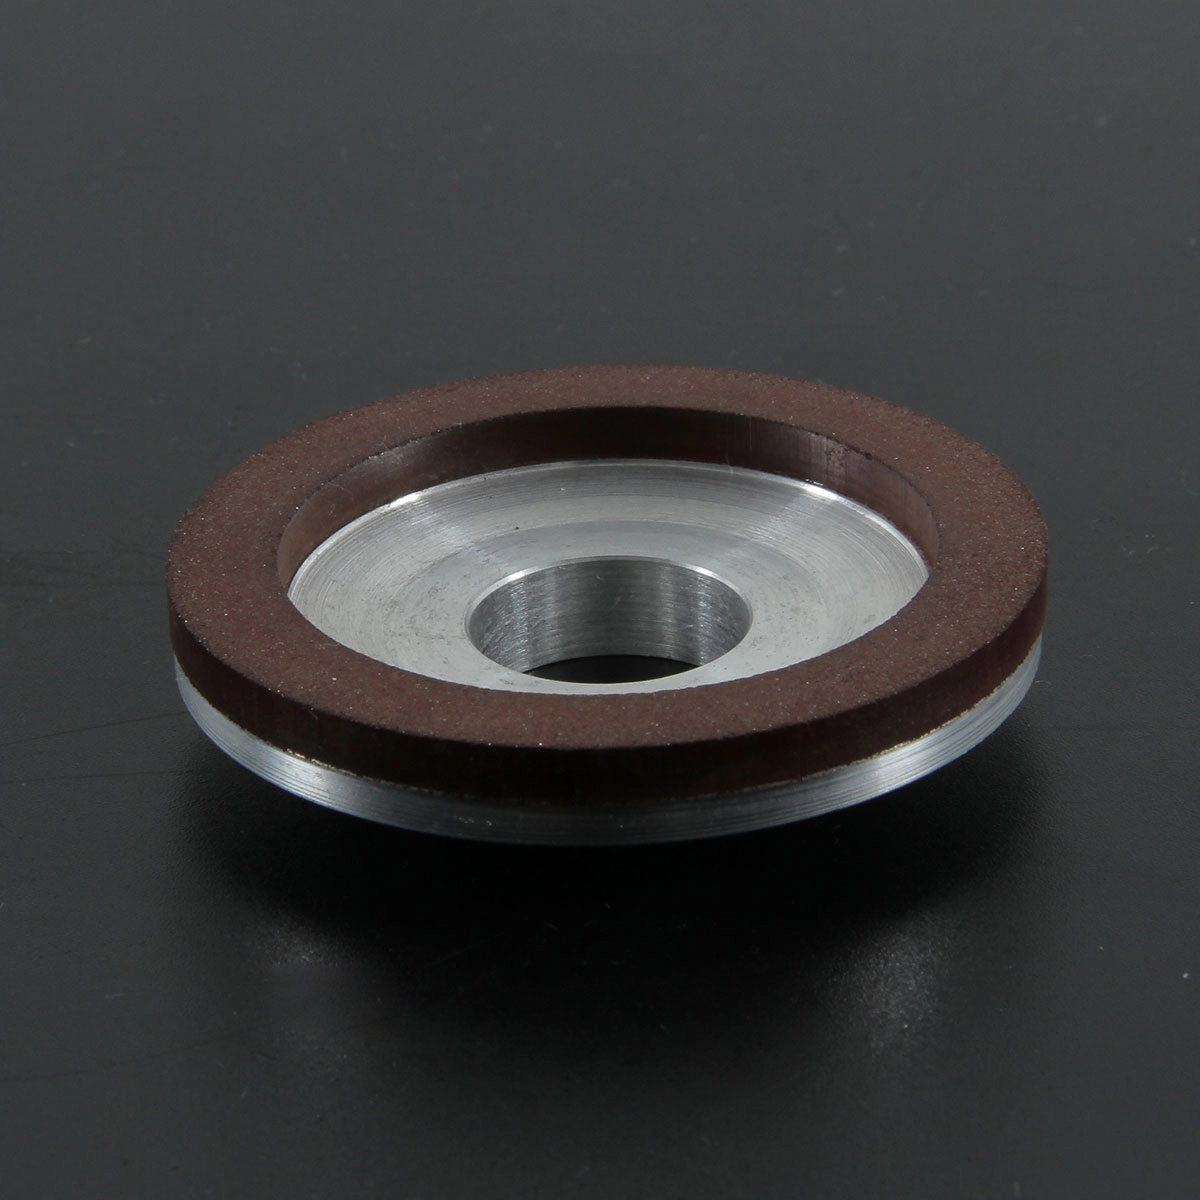 Black diamond cbn grinding wheel for polishing carbide HSS scissors